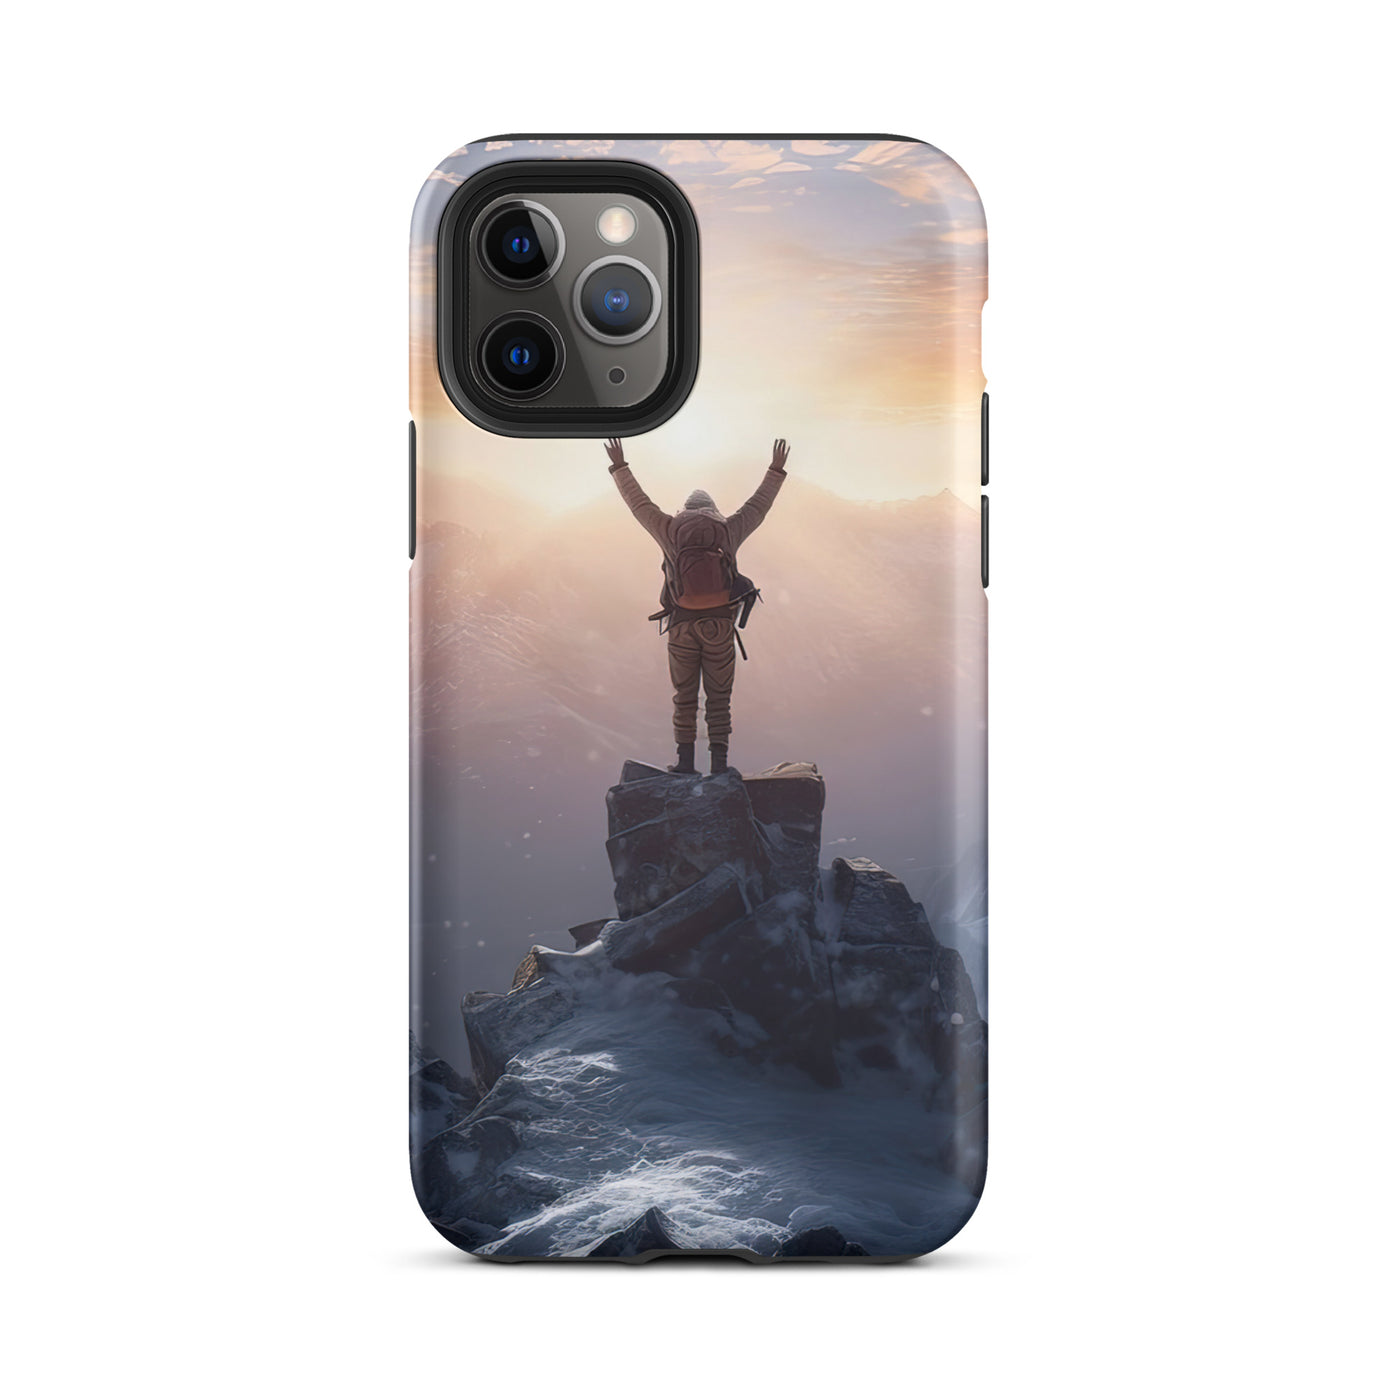 Mann auf der Spitze eines Berges - Landschaftsmalerei - iPhone Schutzhülle (robust) berge xxx iPhone 11 Pro